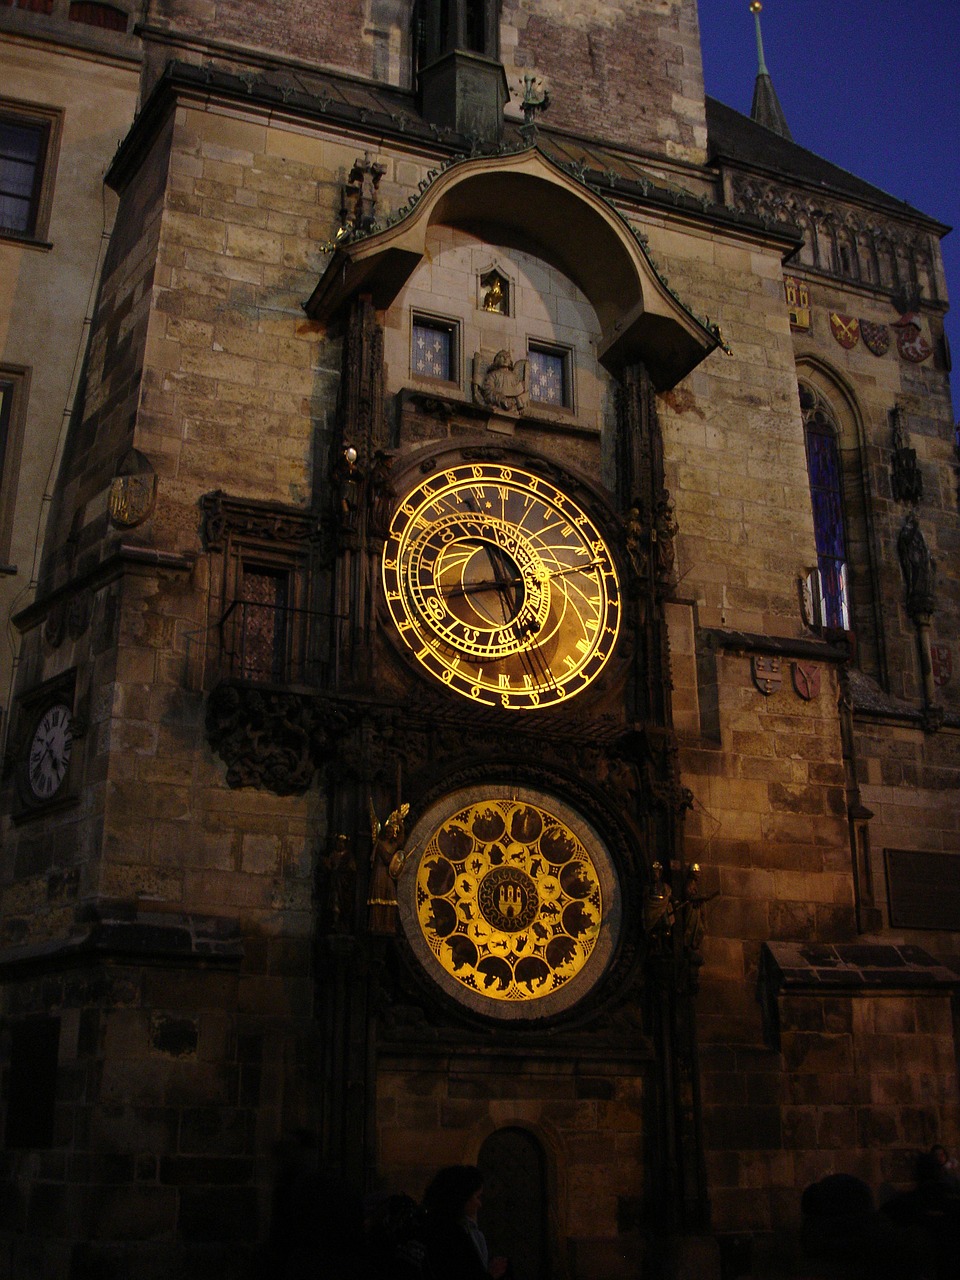 Image - prague the astronomical clock night